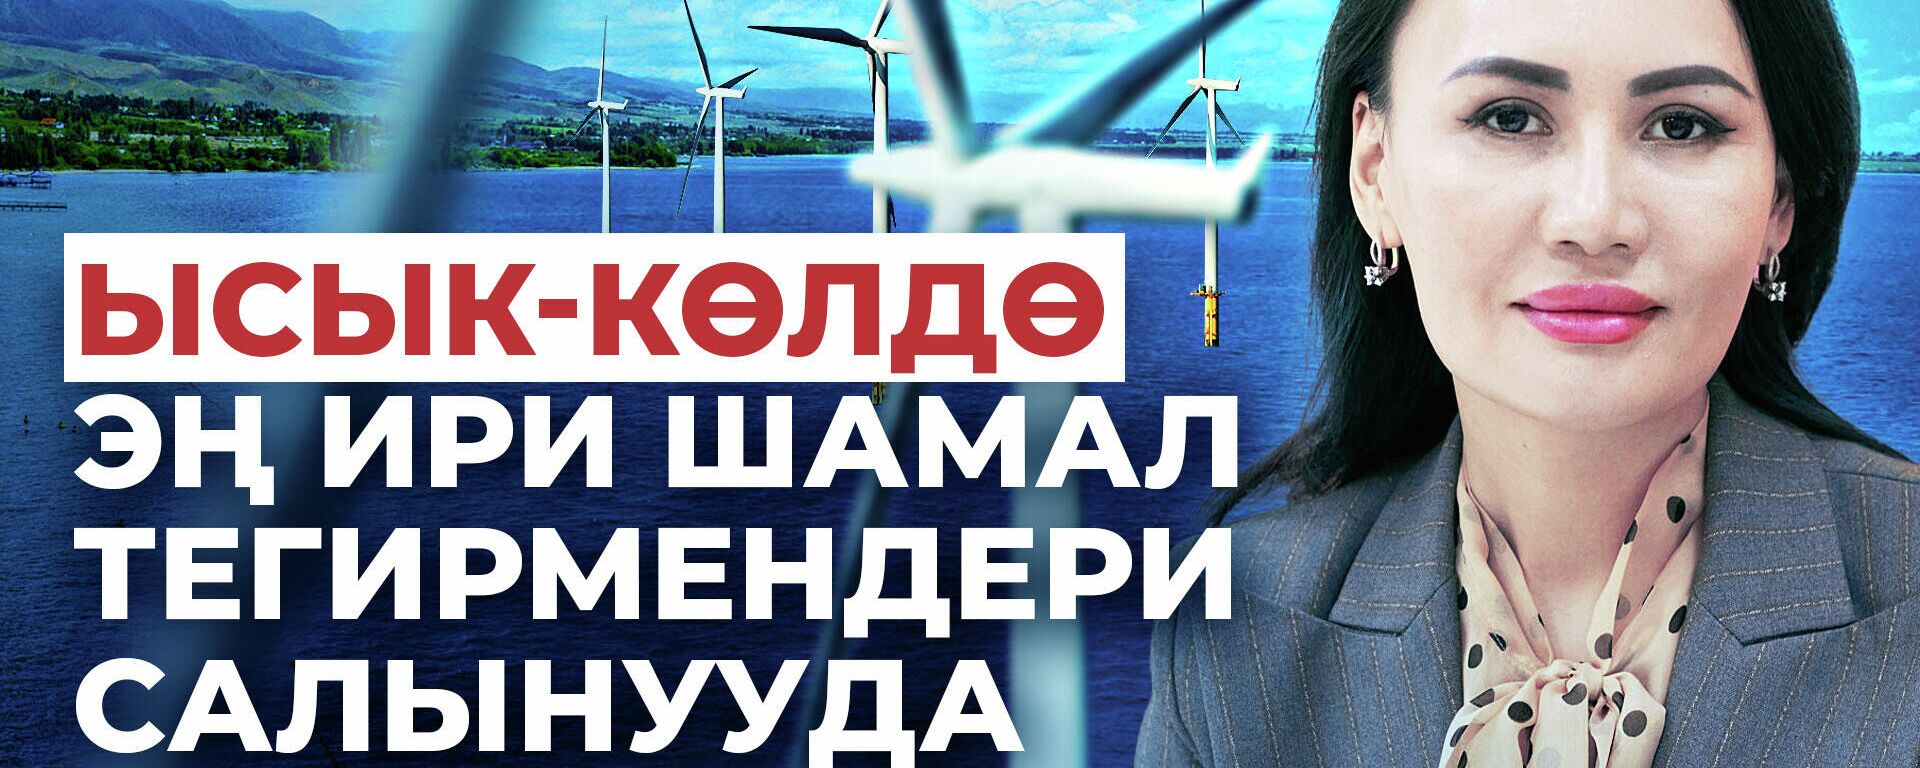 Кыргызстан энергетикалык кризистен кантип чыга алат? Ойлонтчу видео - Sputnik Кыргызстан, 1920, 26.02.2022